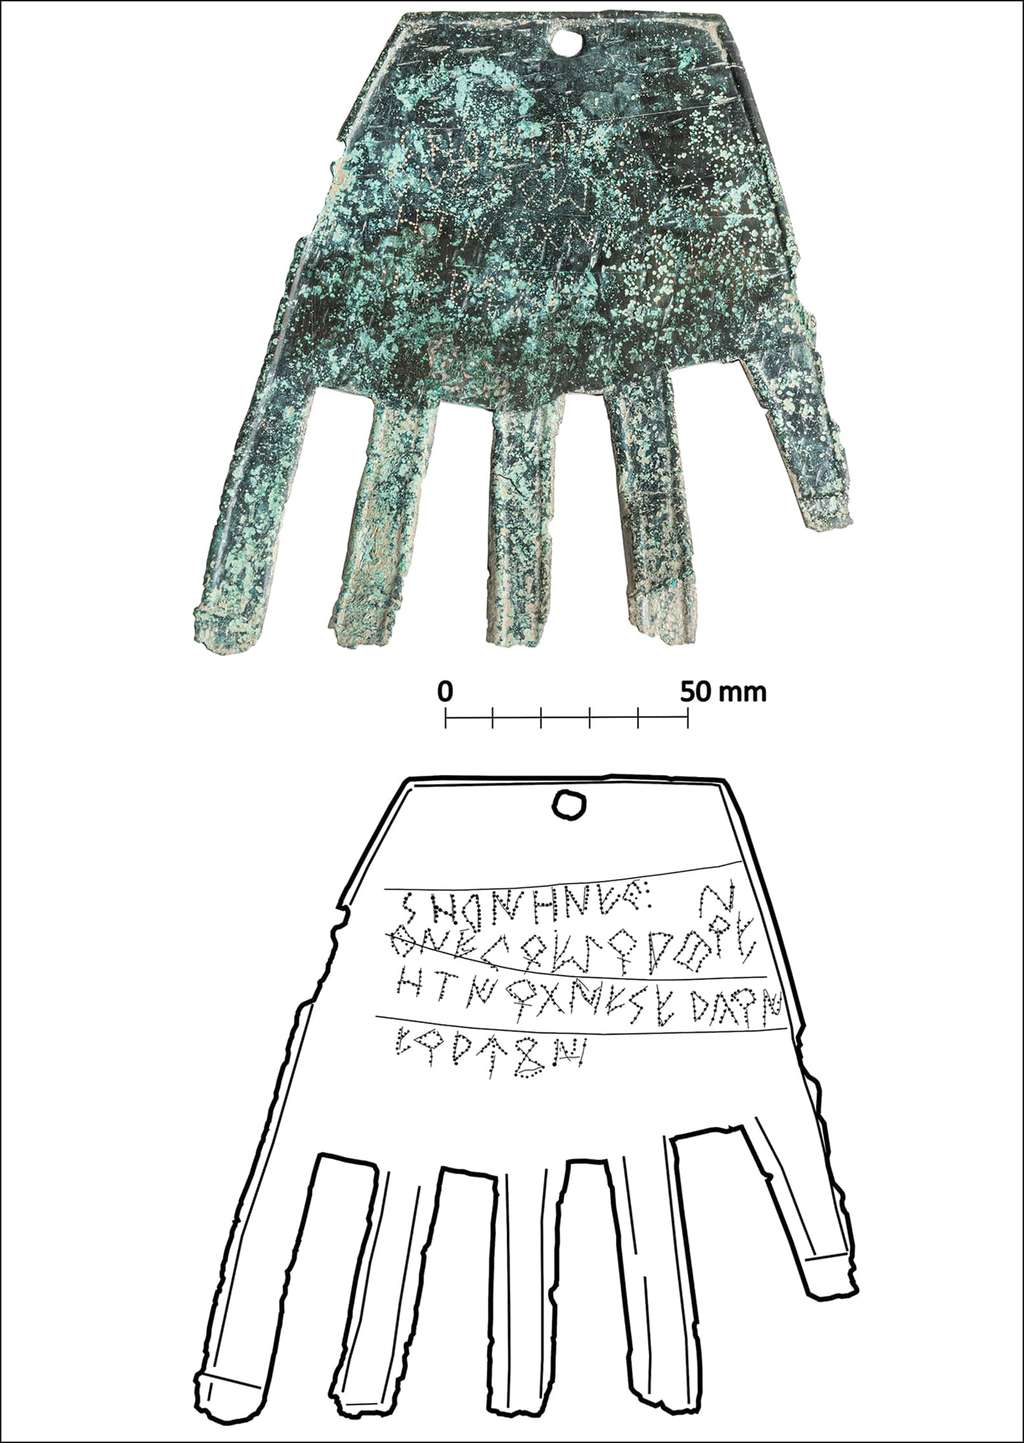 Photographie de la main d'Irulegi et dessin réalisé à partir de la photographie et d'une image scannée. © Cambridge University Press